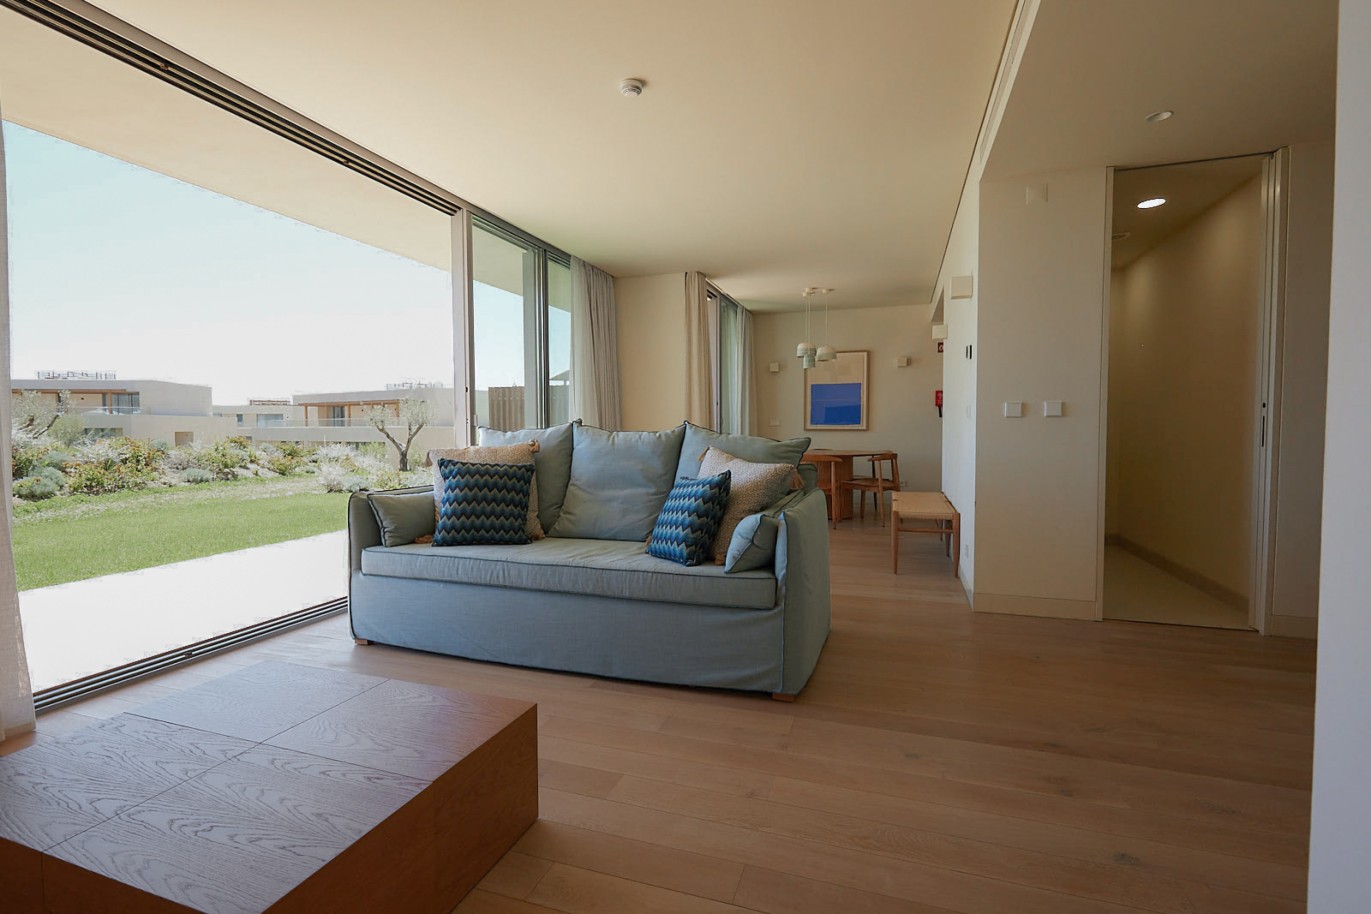 Piso de 2 dormitorios en complejo, en venta en Porches, Algarve_229245